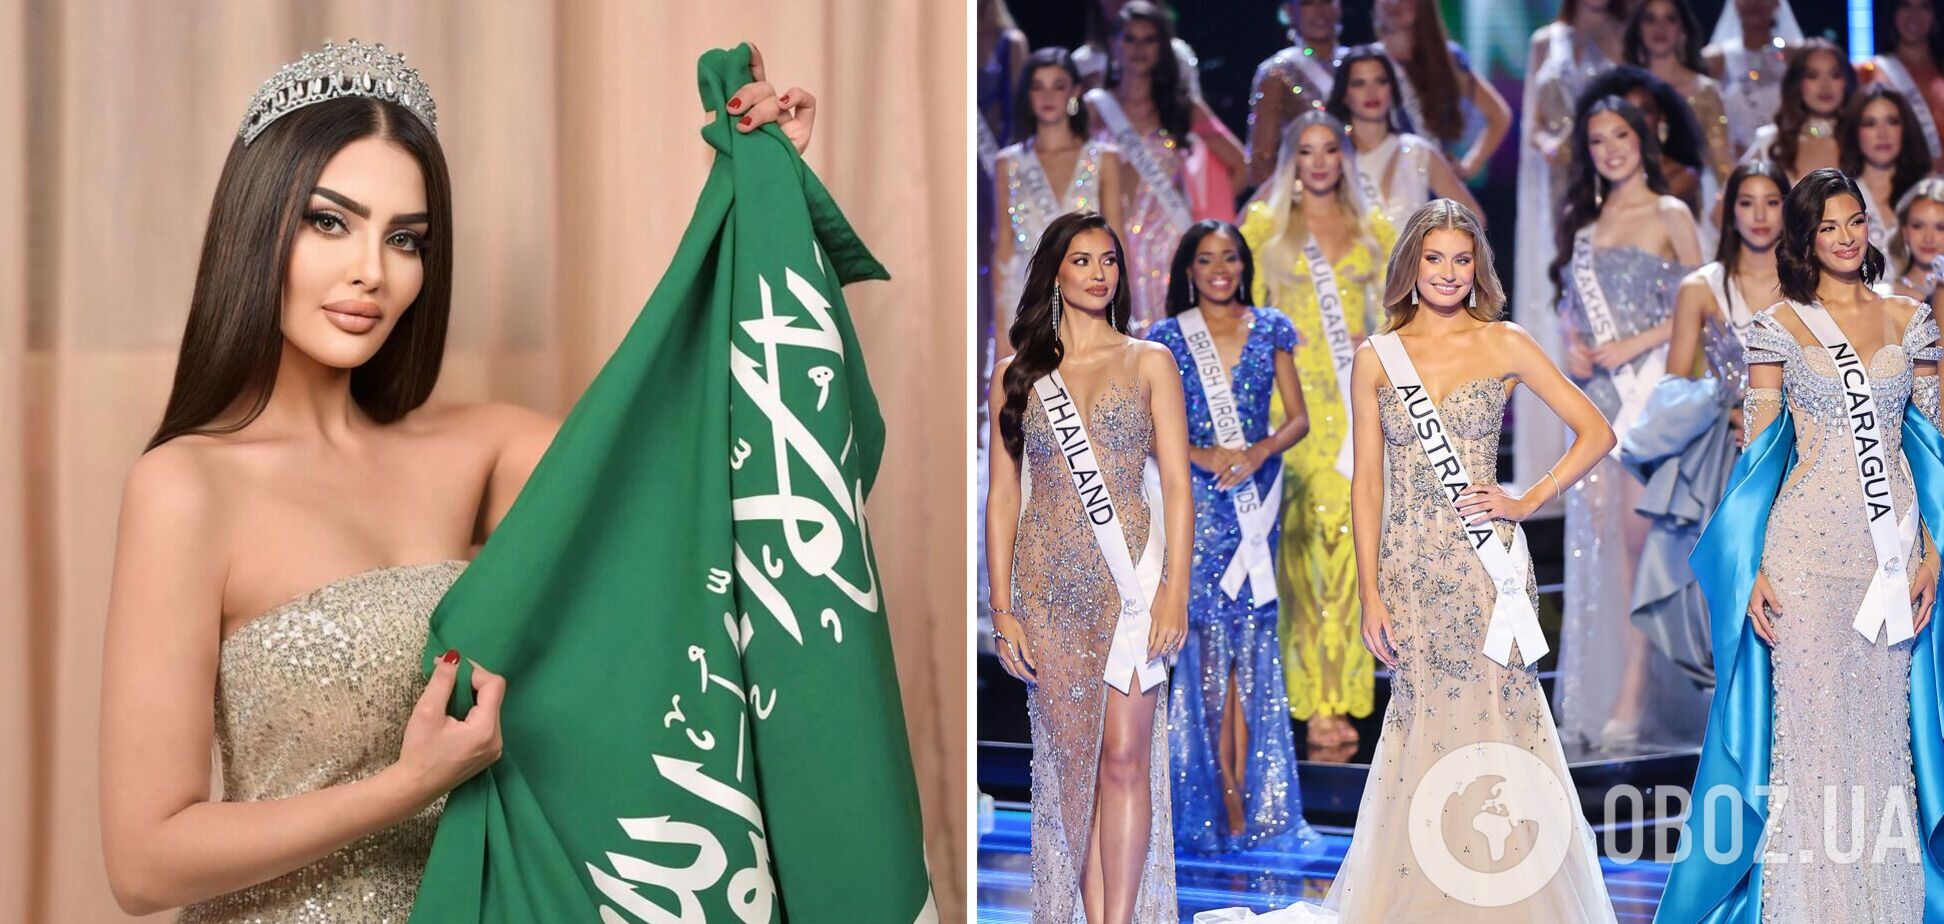 Организаторы 'Мисс Вселенная' опровергли участие Саудовской Аравии в конкурсе и обвинили 27-летнюю модель во лжи